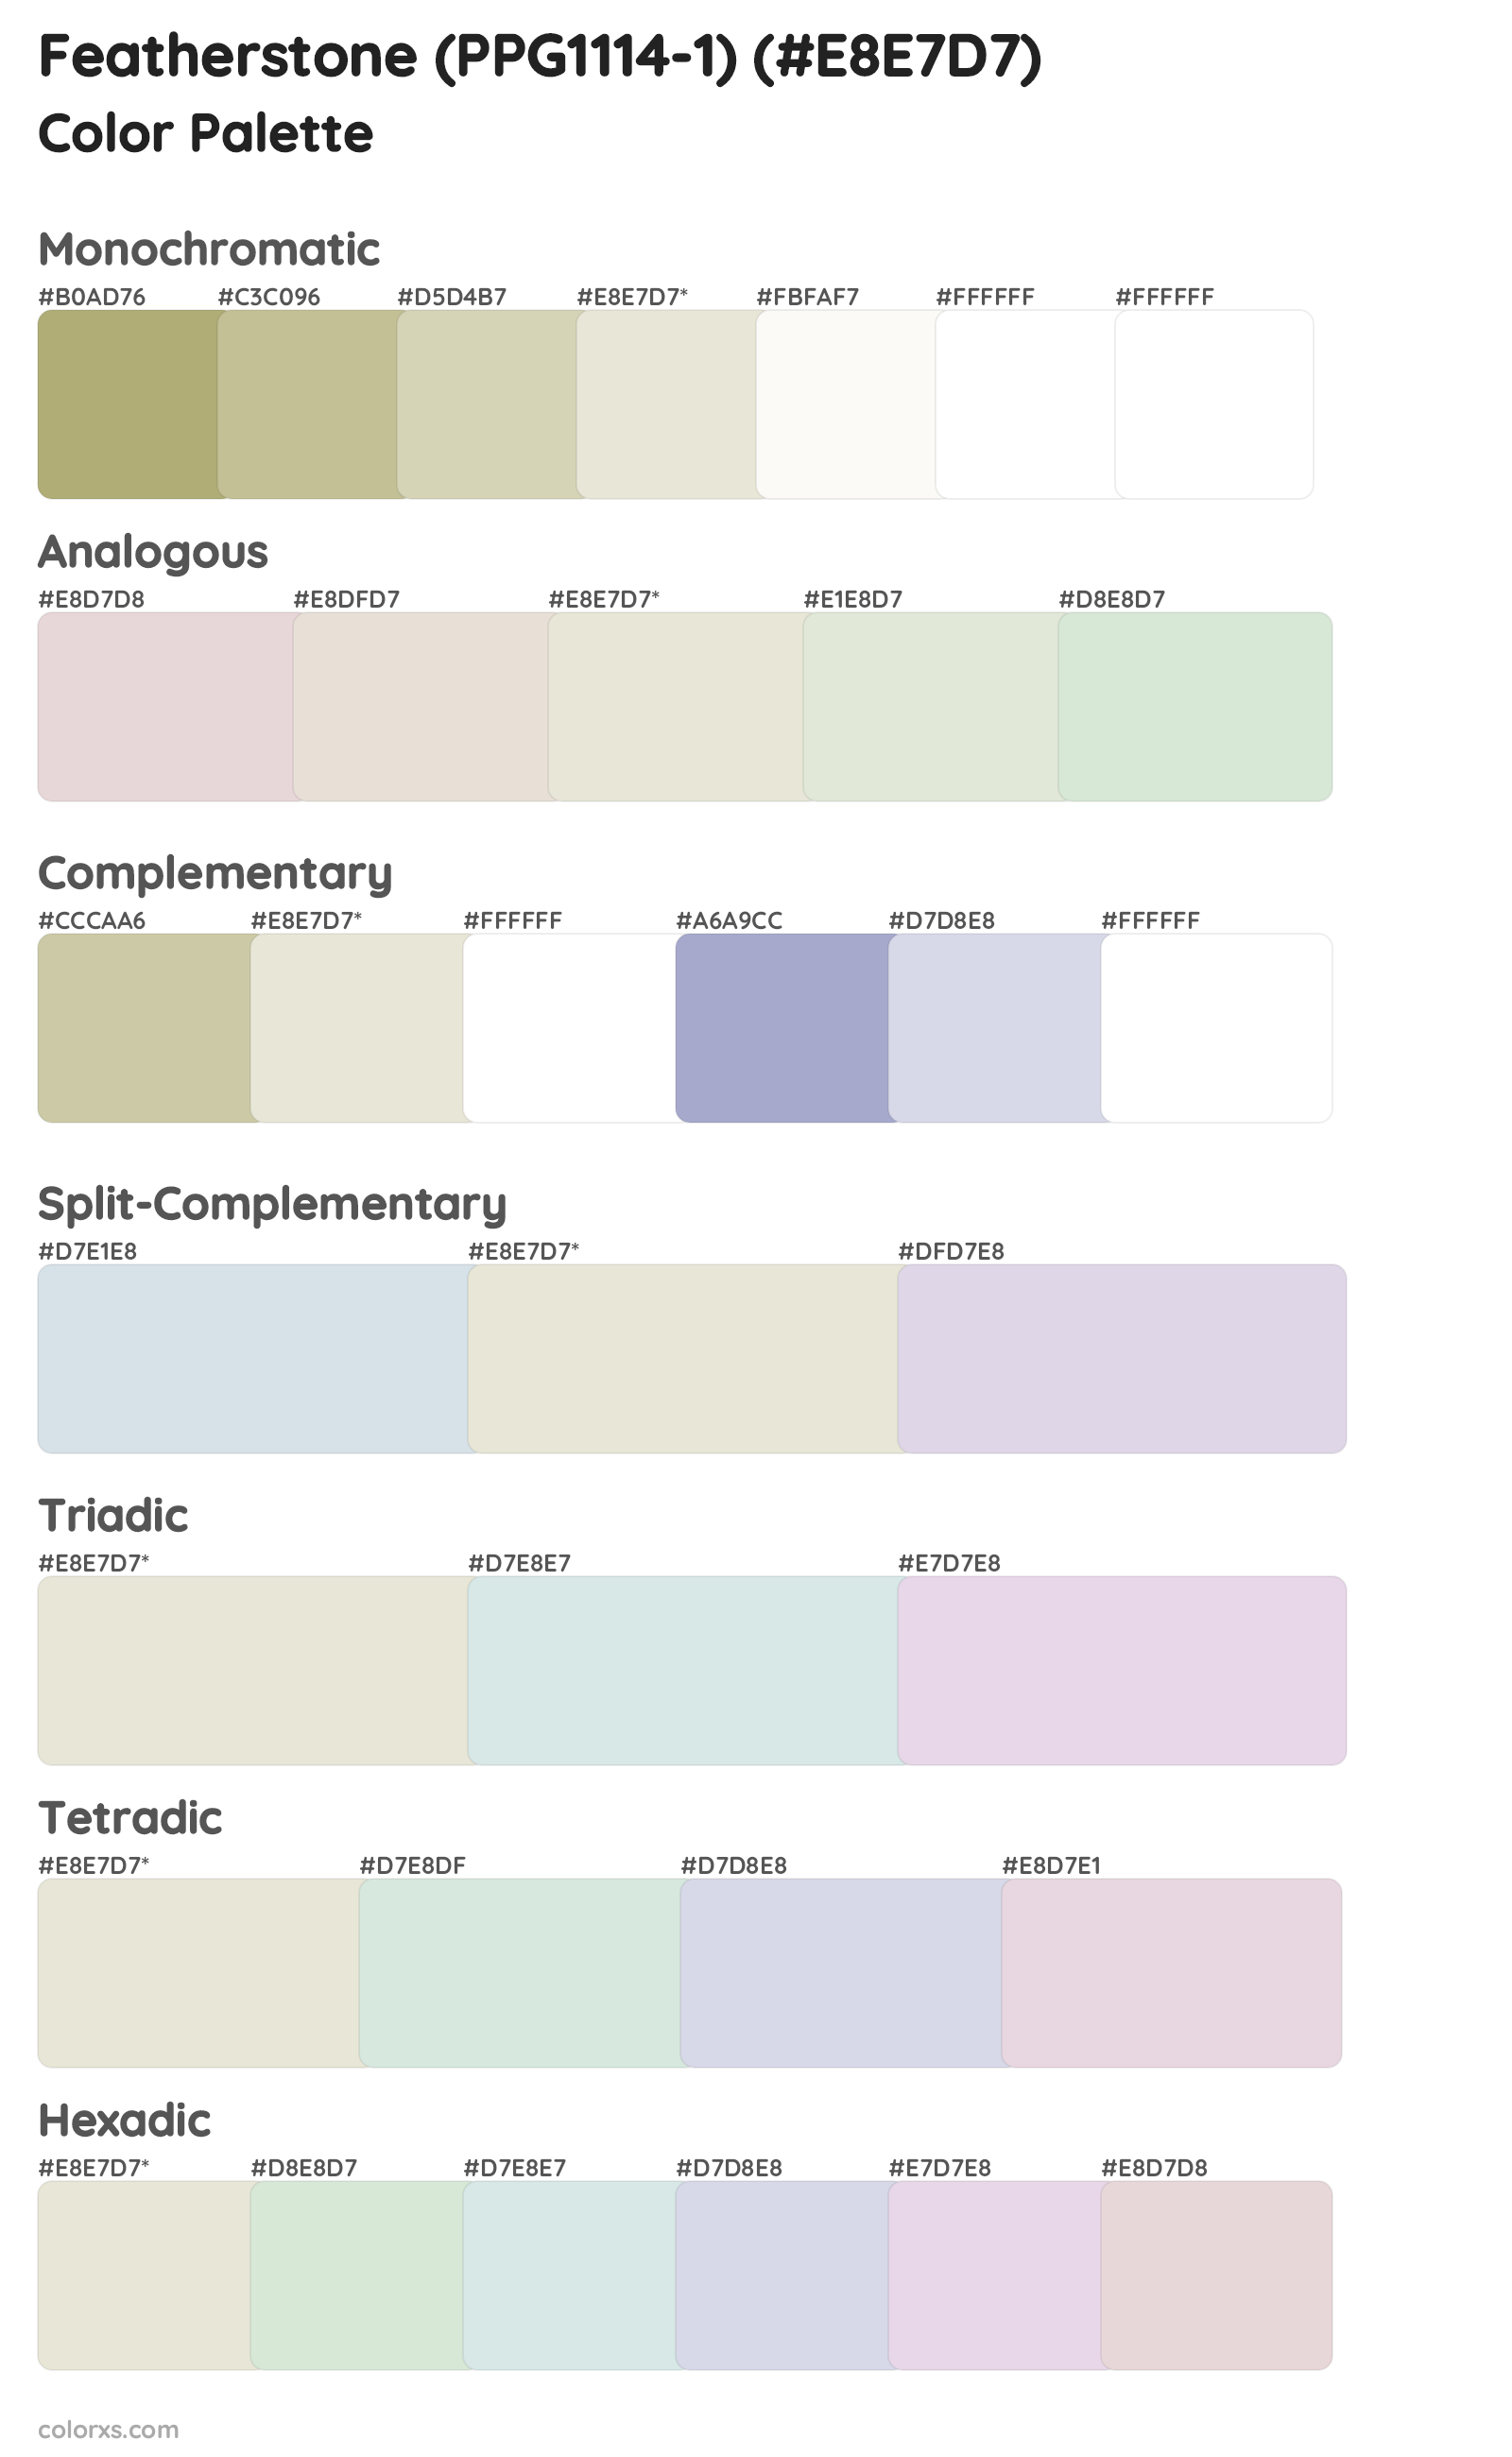 Featherstone (PPG1114-1) Color Scheme Palettes